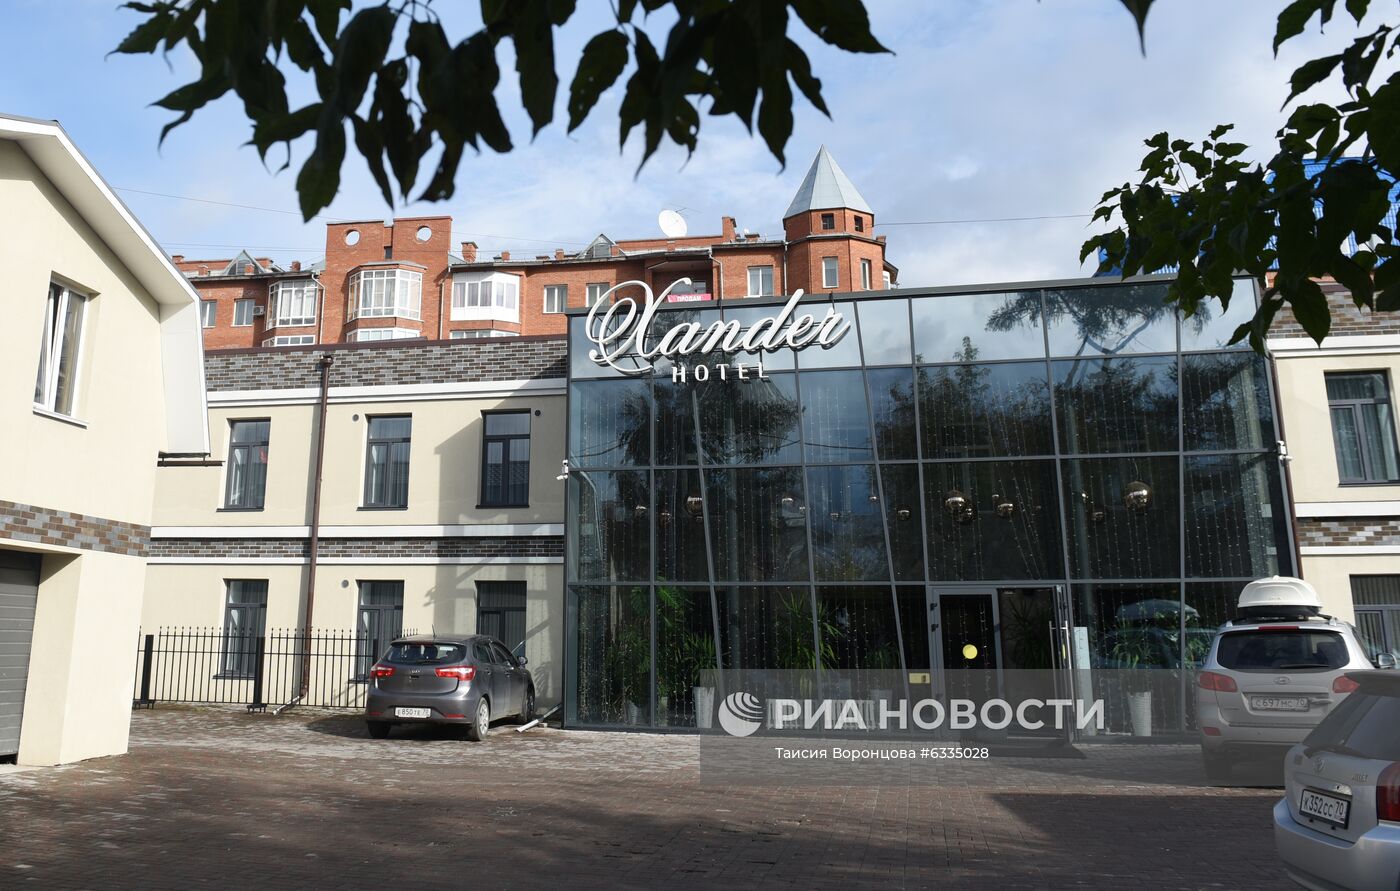 Гостиница Xander Hotel, где жил А. Навальный